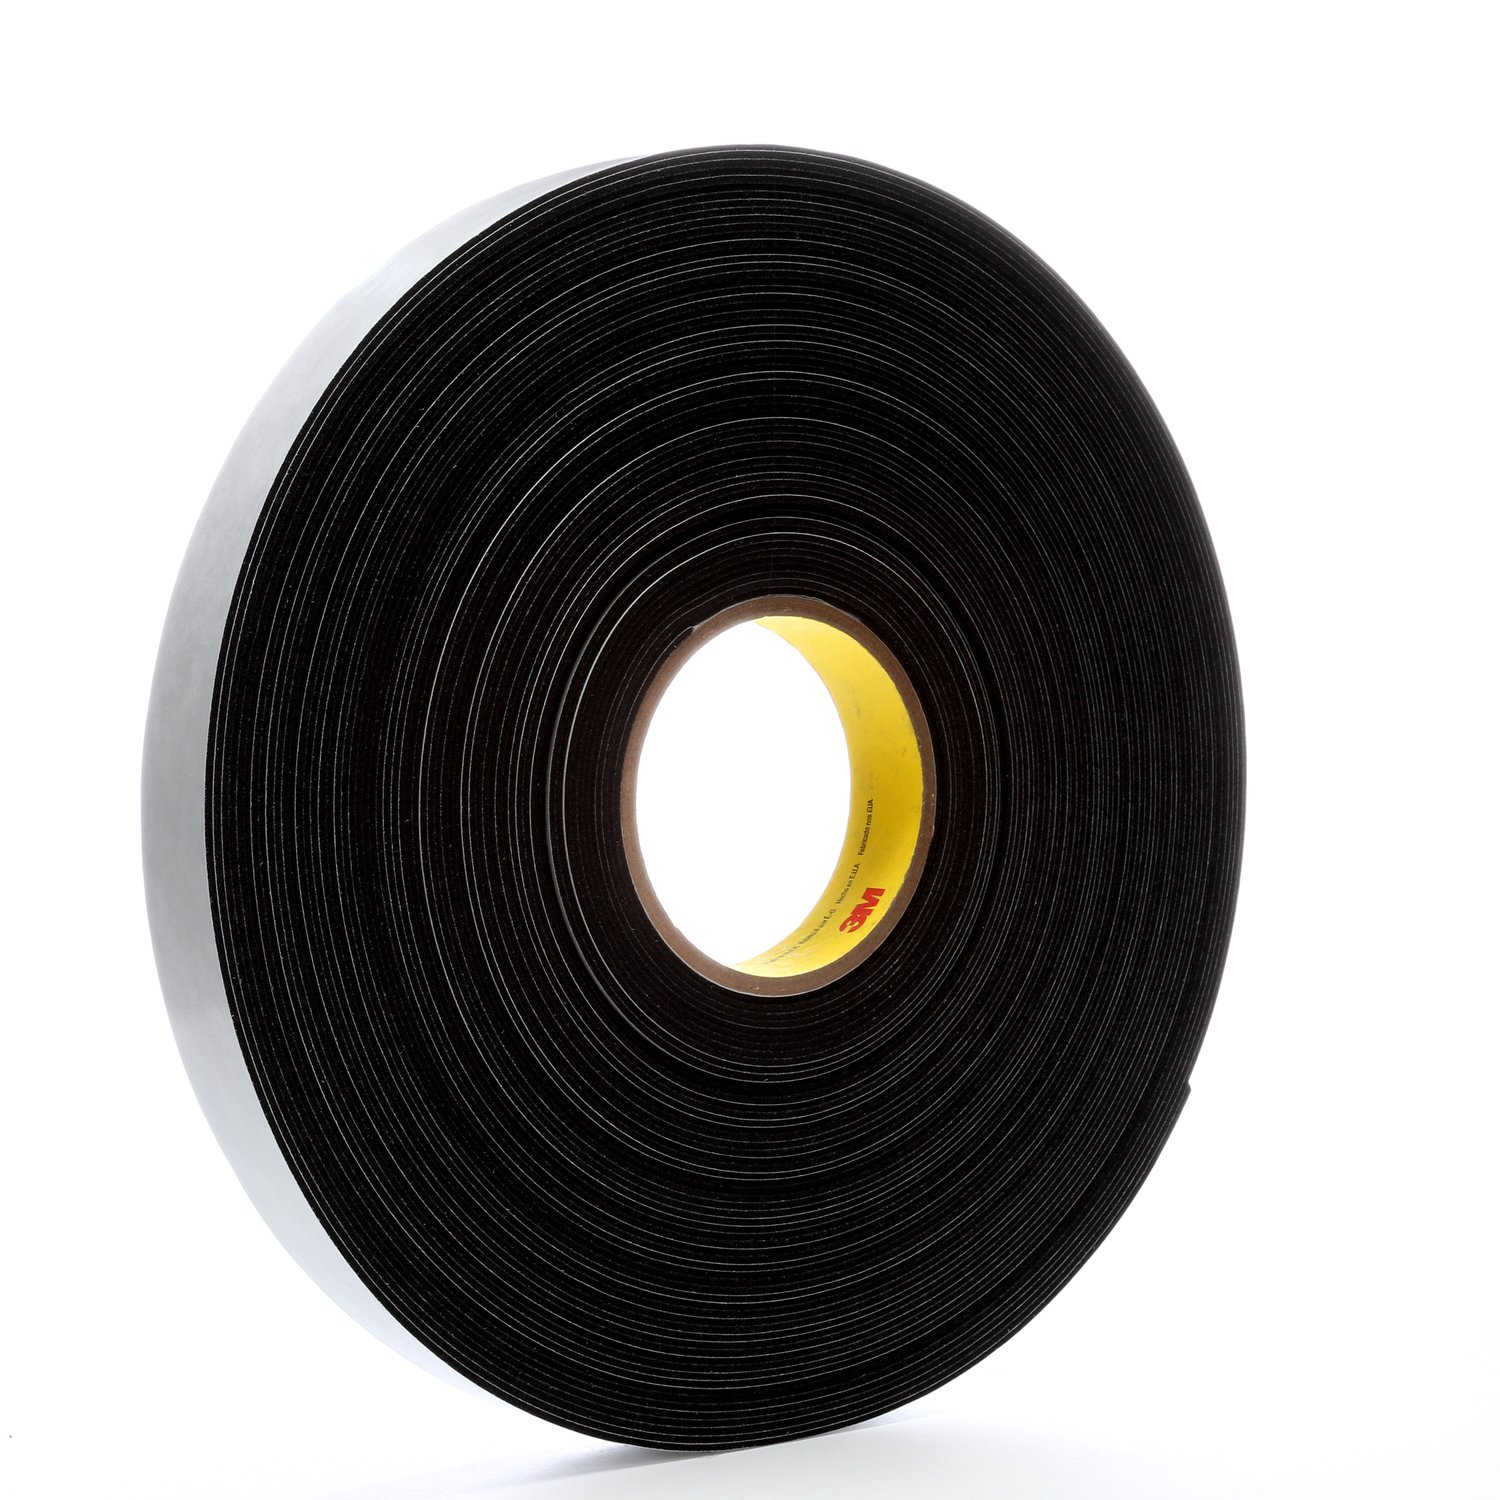 7000047493 - 3M Vinyl Foam Tape 4516, Black, 1 in x 36 yd, 62 mil, 9 rolls per case